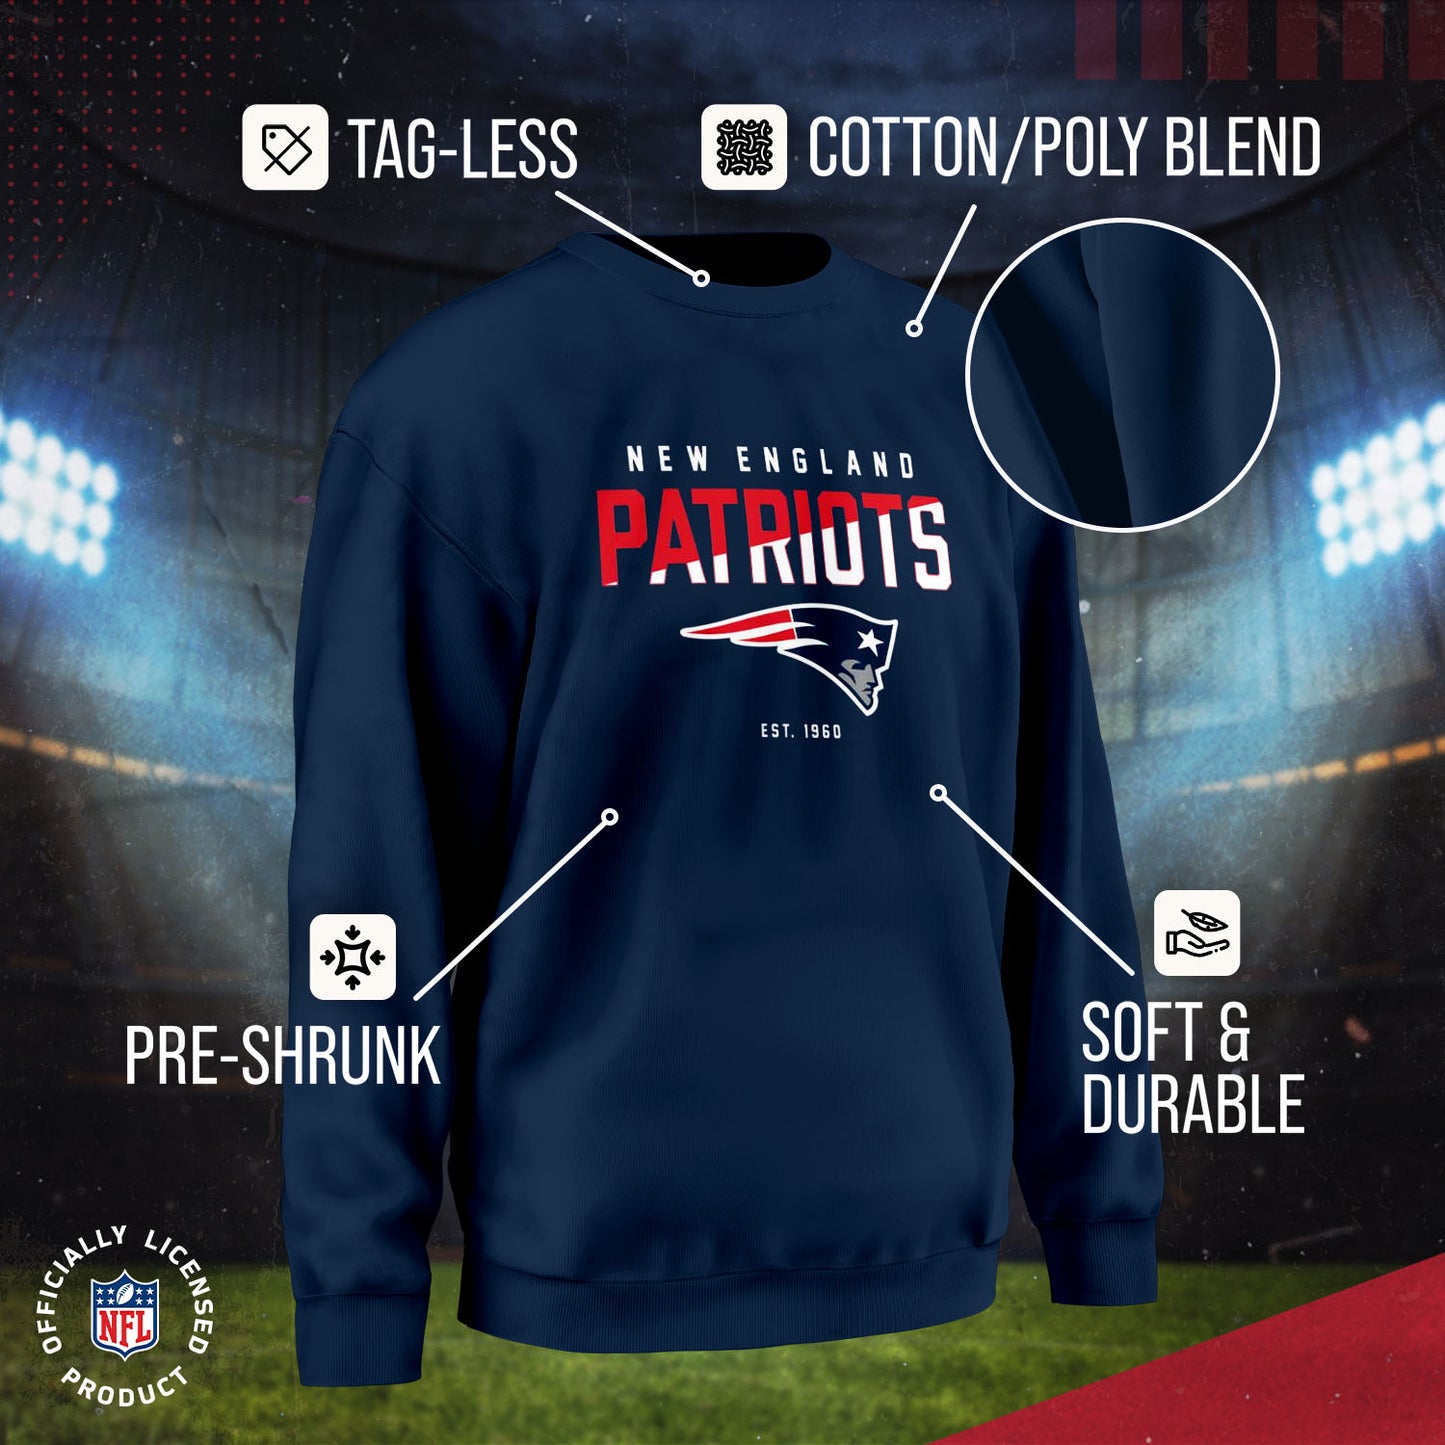 New England Patriots Adult NFL Diagonal Fade Color Block Crewneck Sweatshirt - Navy